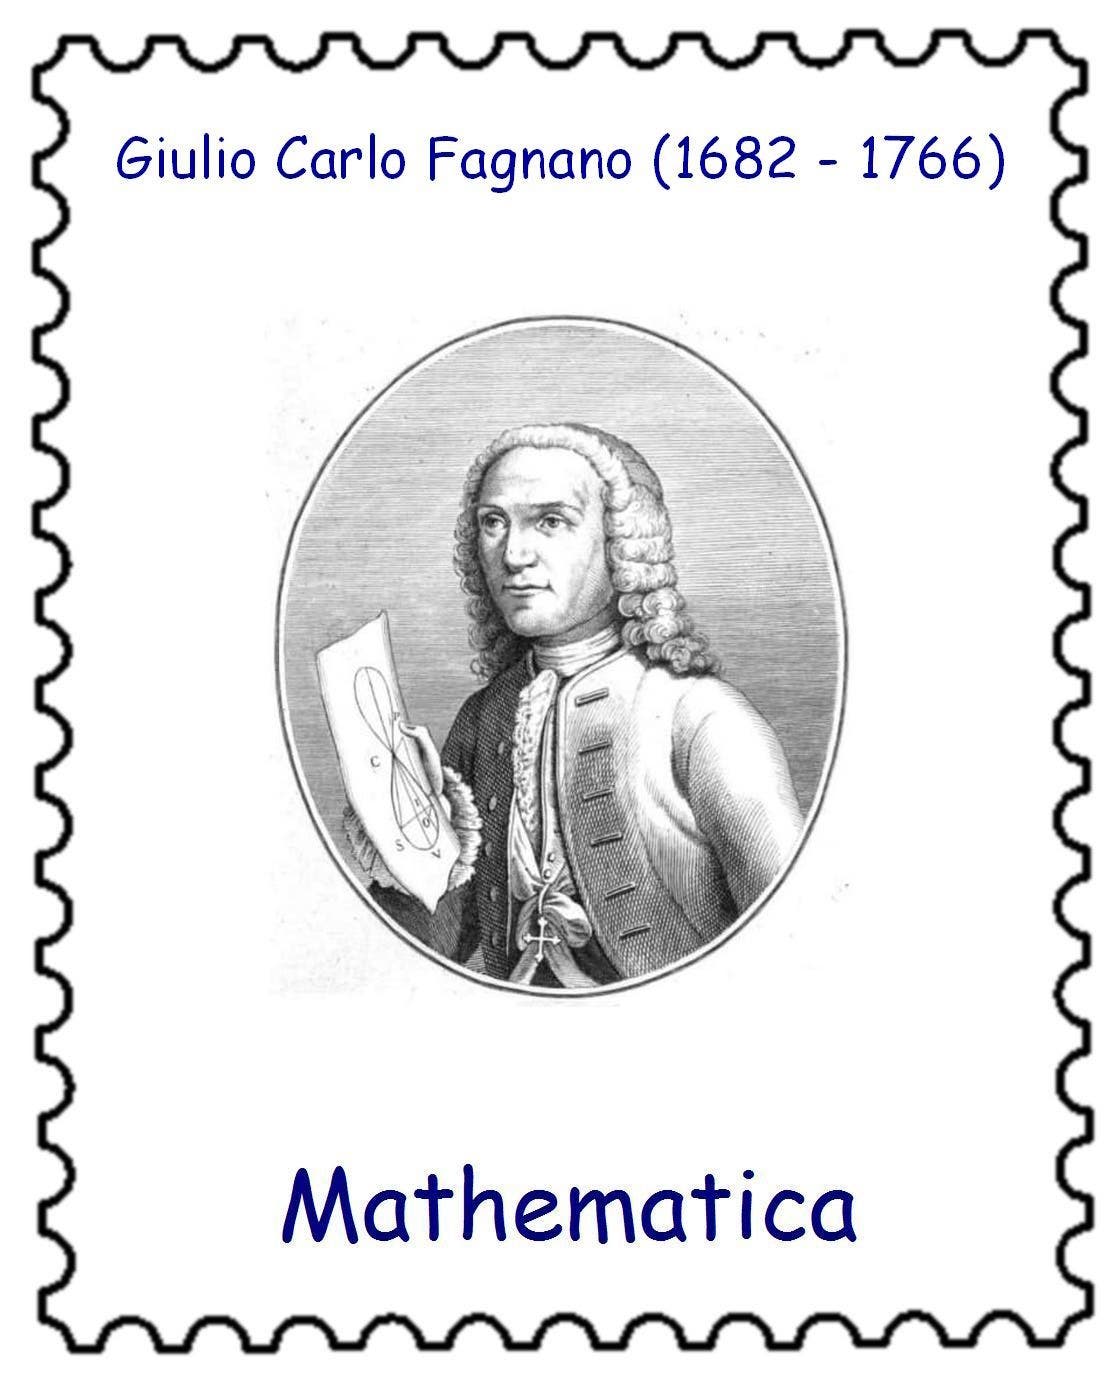 Porträt von Giulio Carlo Fagnano